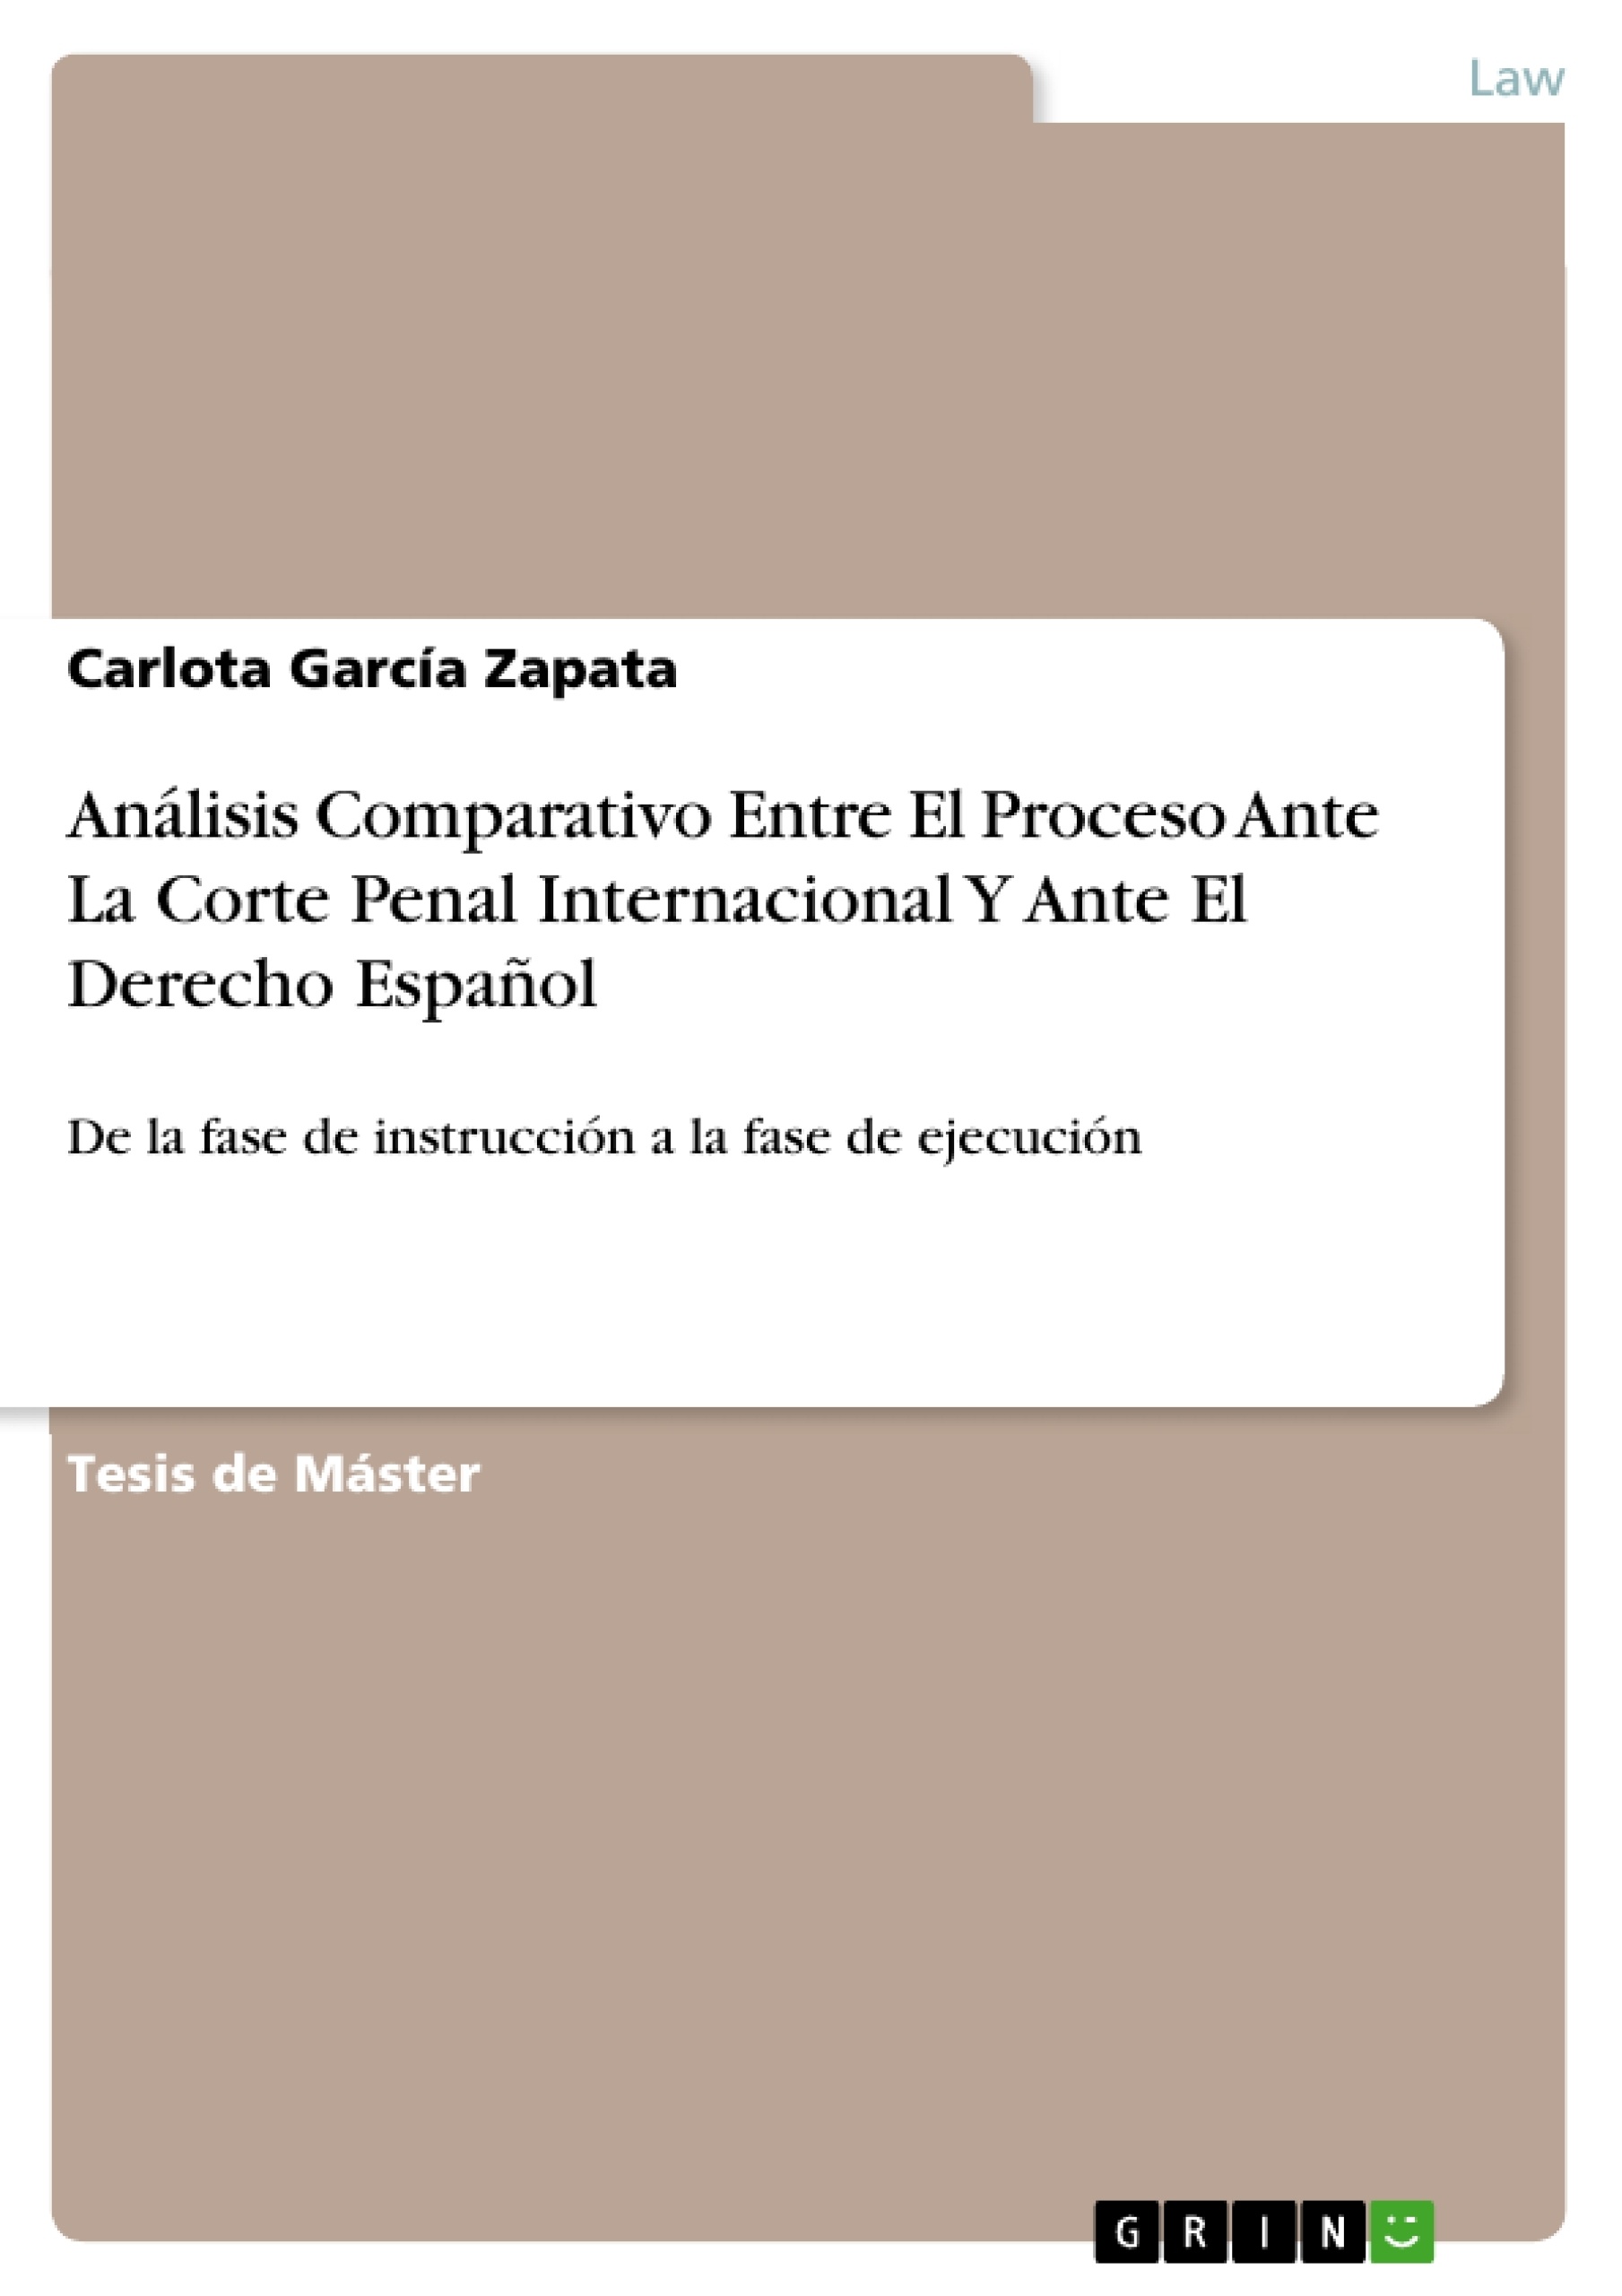 Titre: Análisis Comparativo Entre El Proceso Ante La Corte Penal Internacional Y Ante El Derecho Español